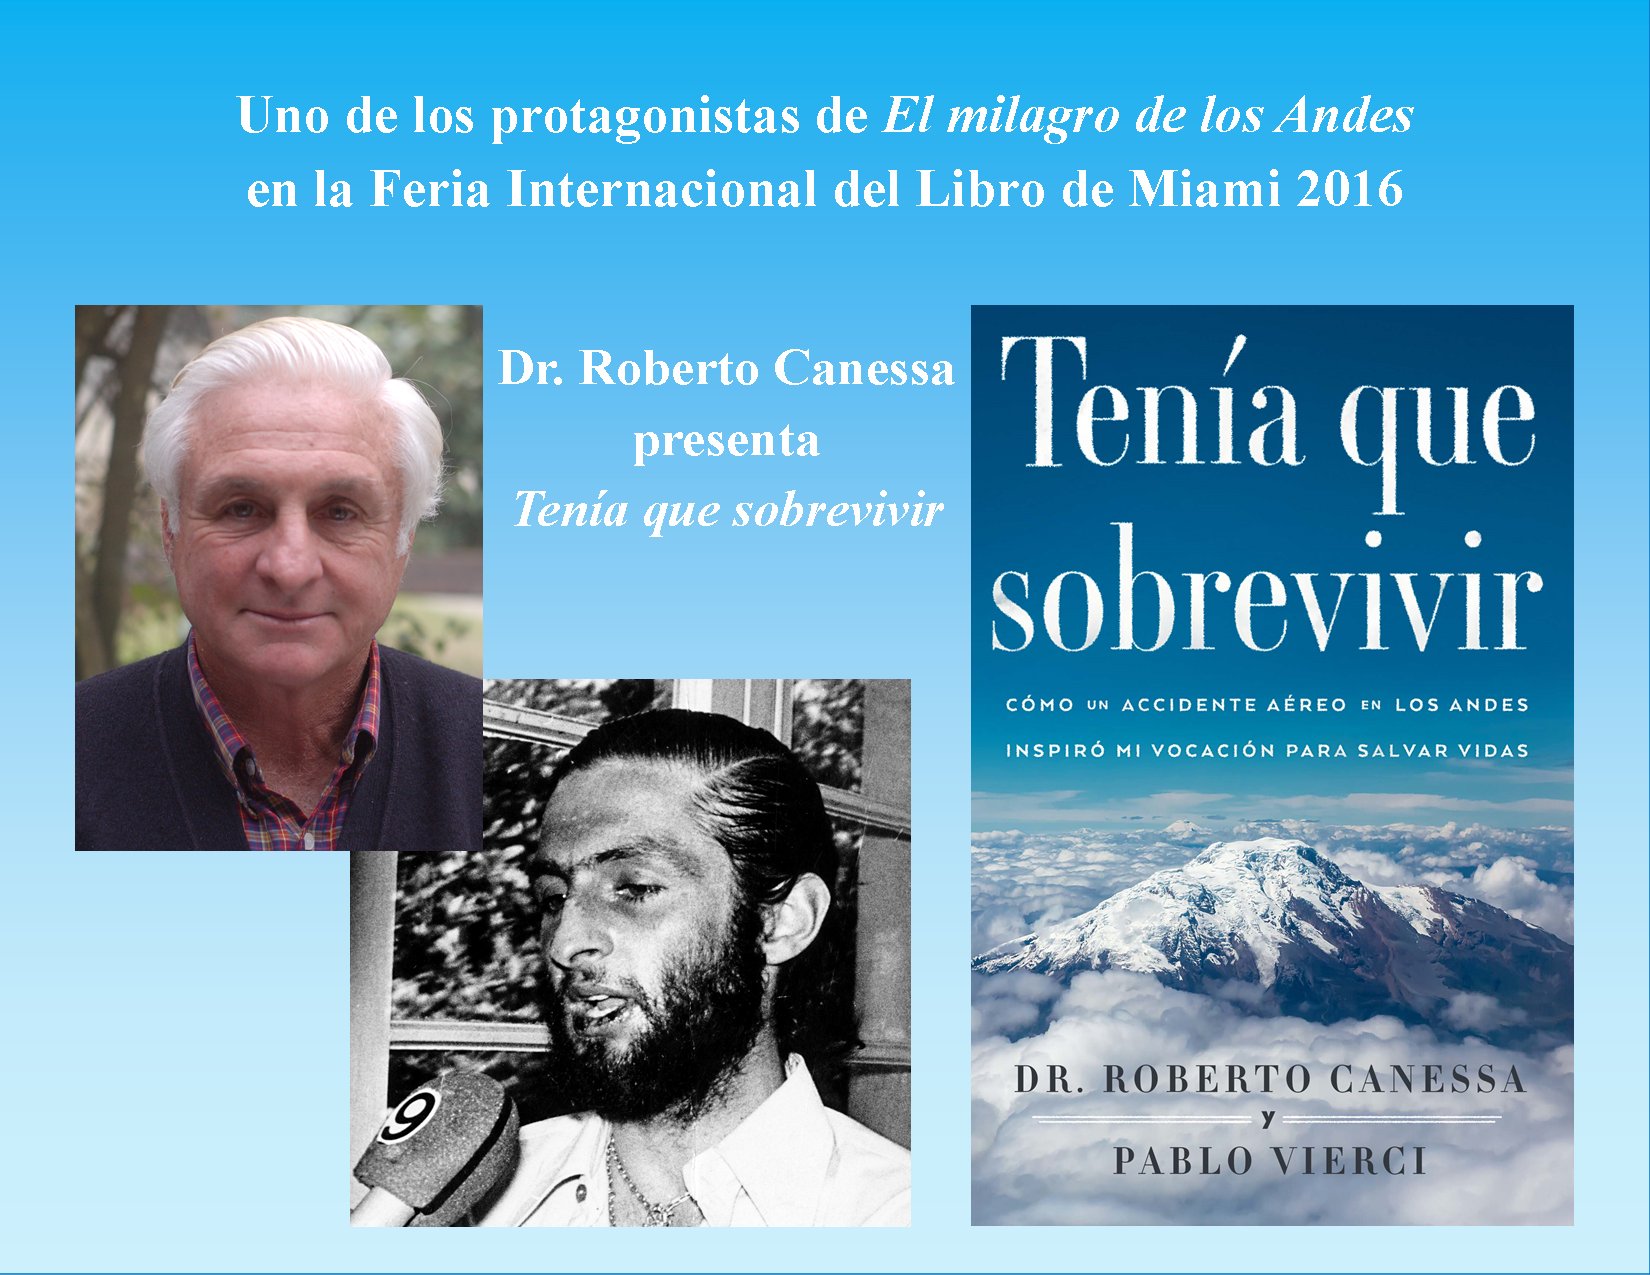 Erwin Pérez on X: Uruguayo Roberto Canessa (Tragedia de Los Andes)  presentará su libro, Tenía que sobrevivir @MiamiBookFair 19 y 20 de  noviembre @rjcanessa  / X